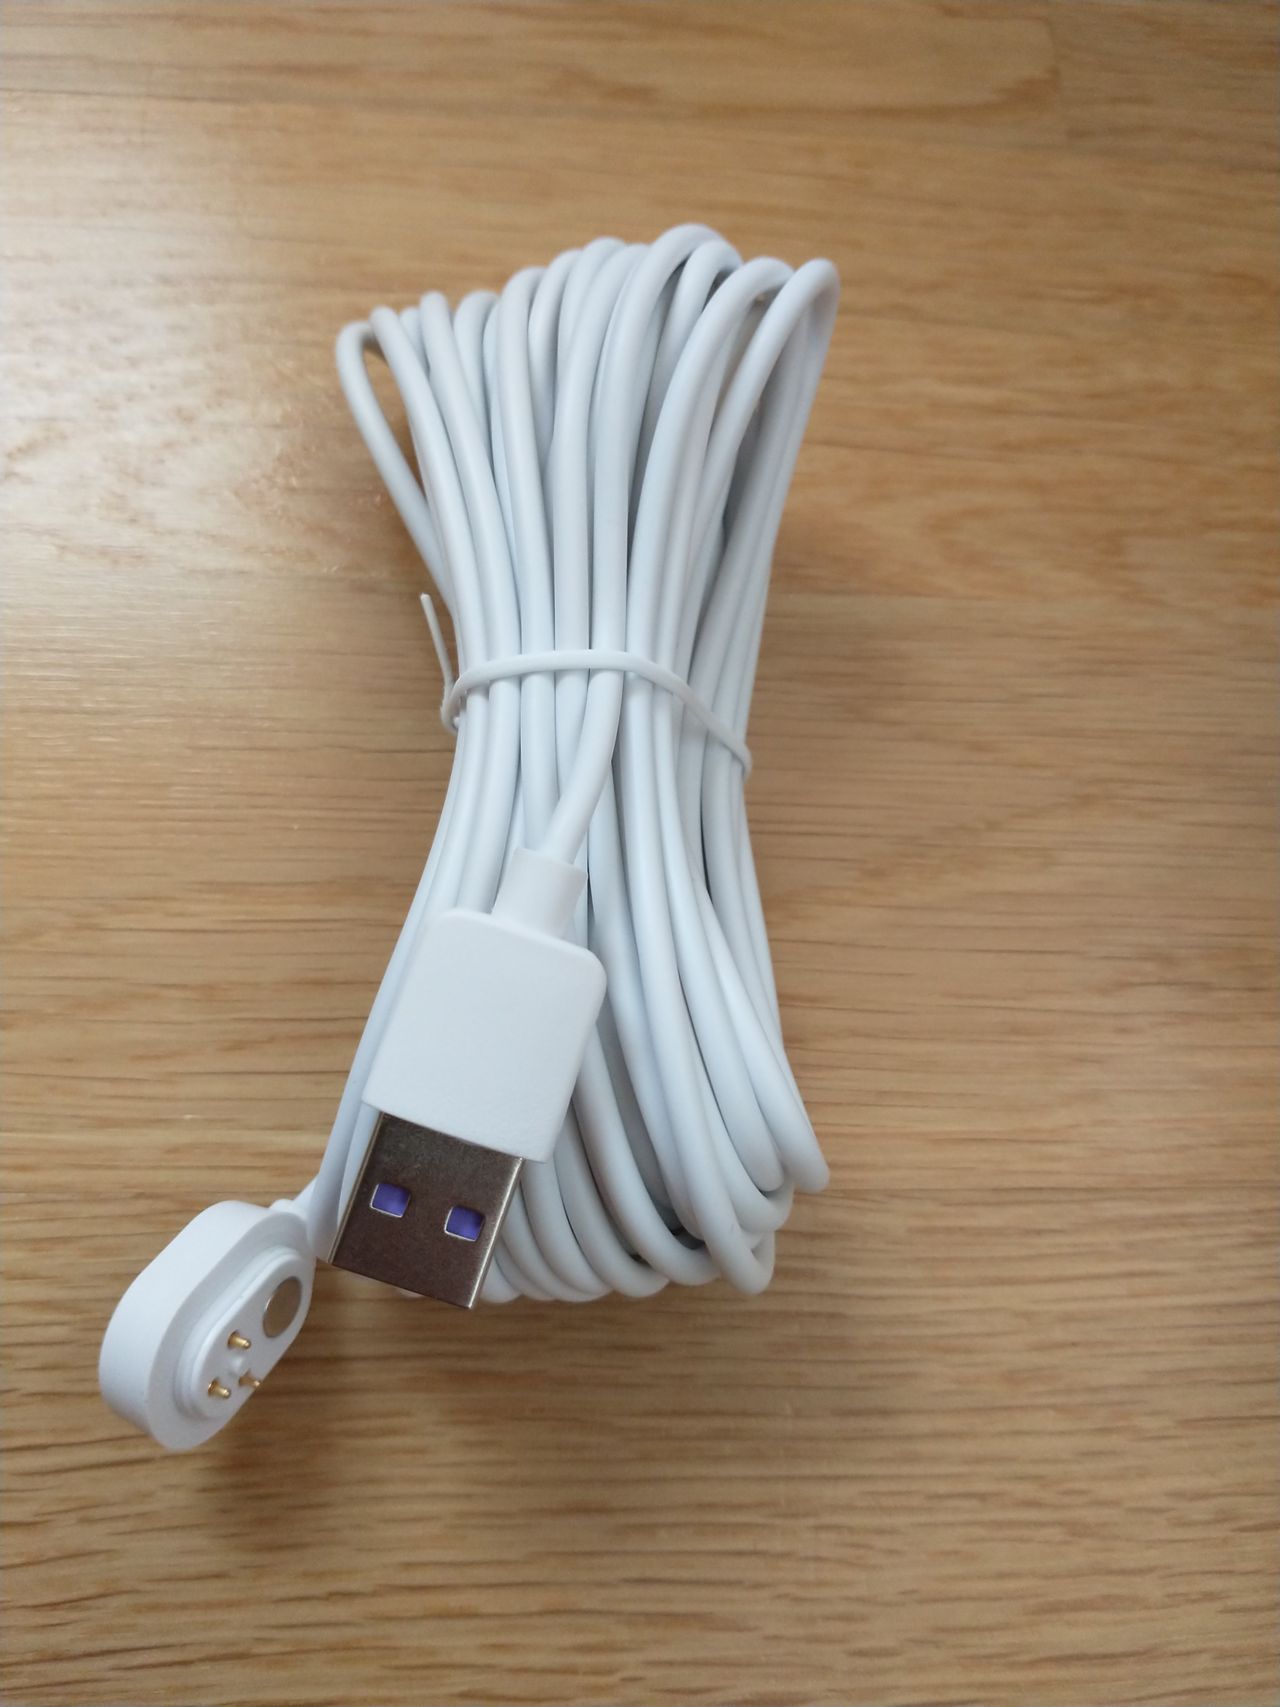 USB kabel for Arlo Ultra, Pro 3 og Floodlight | FINN torget